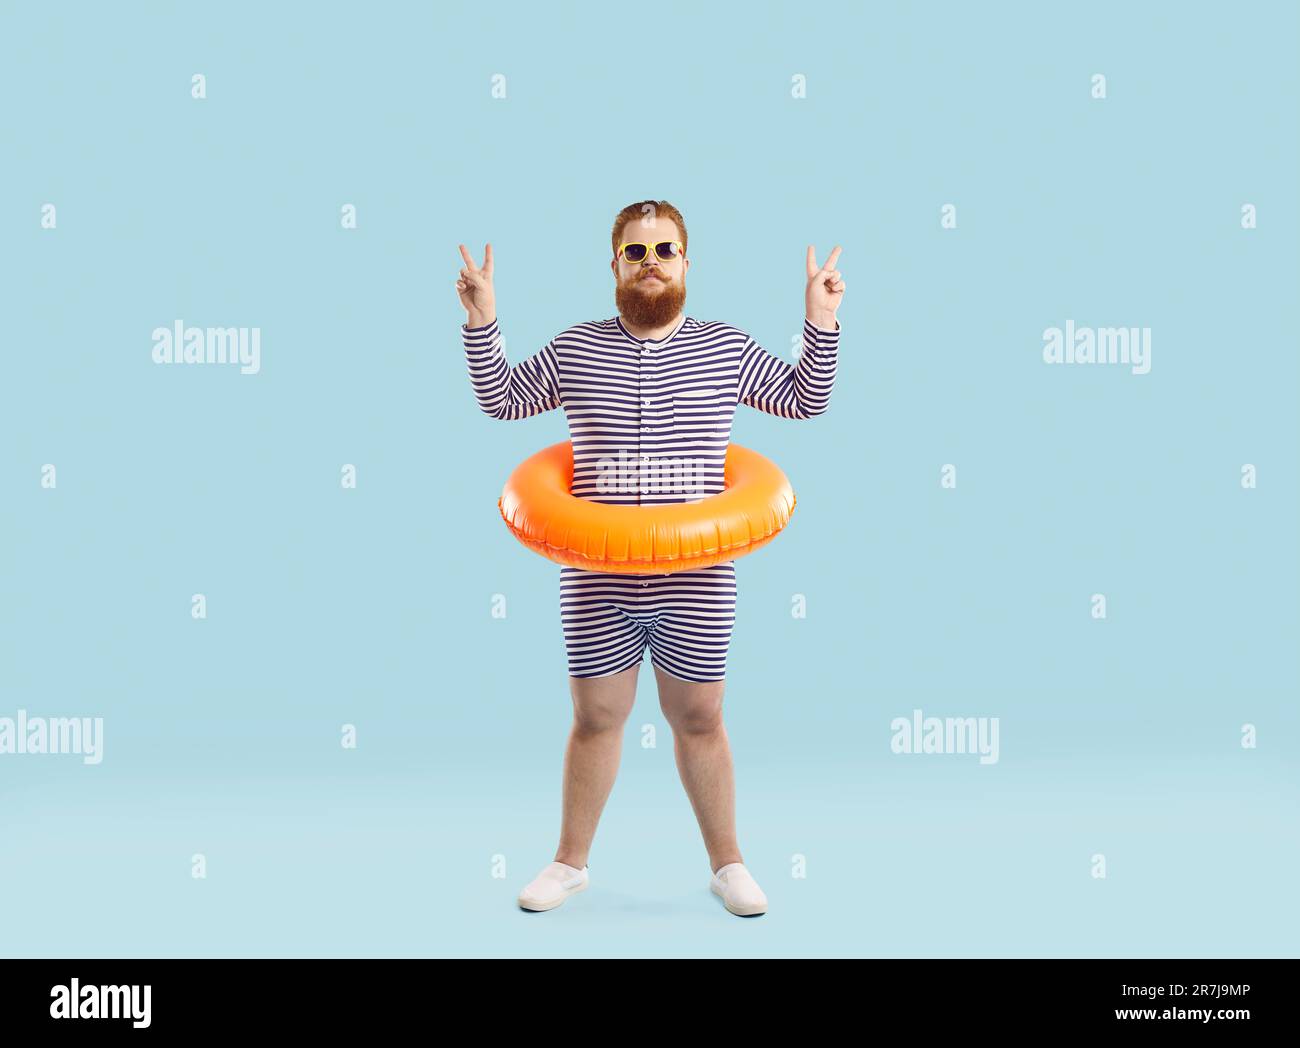 Drôle chubby homme avec cercle gonflable pour la natation à la taille montre V-signe sur fond bleu clair. Banque D'Images